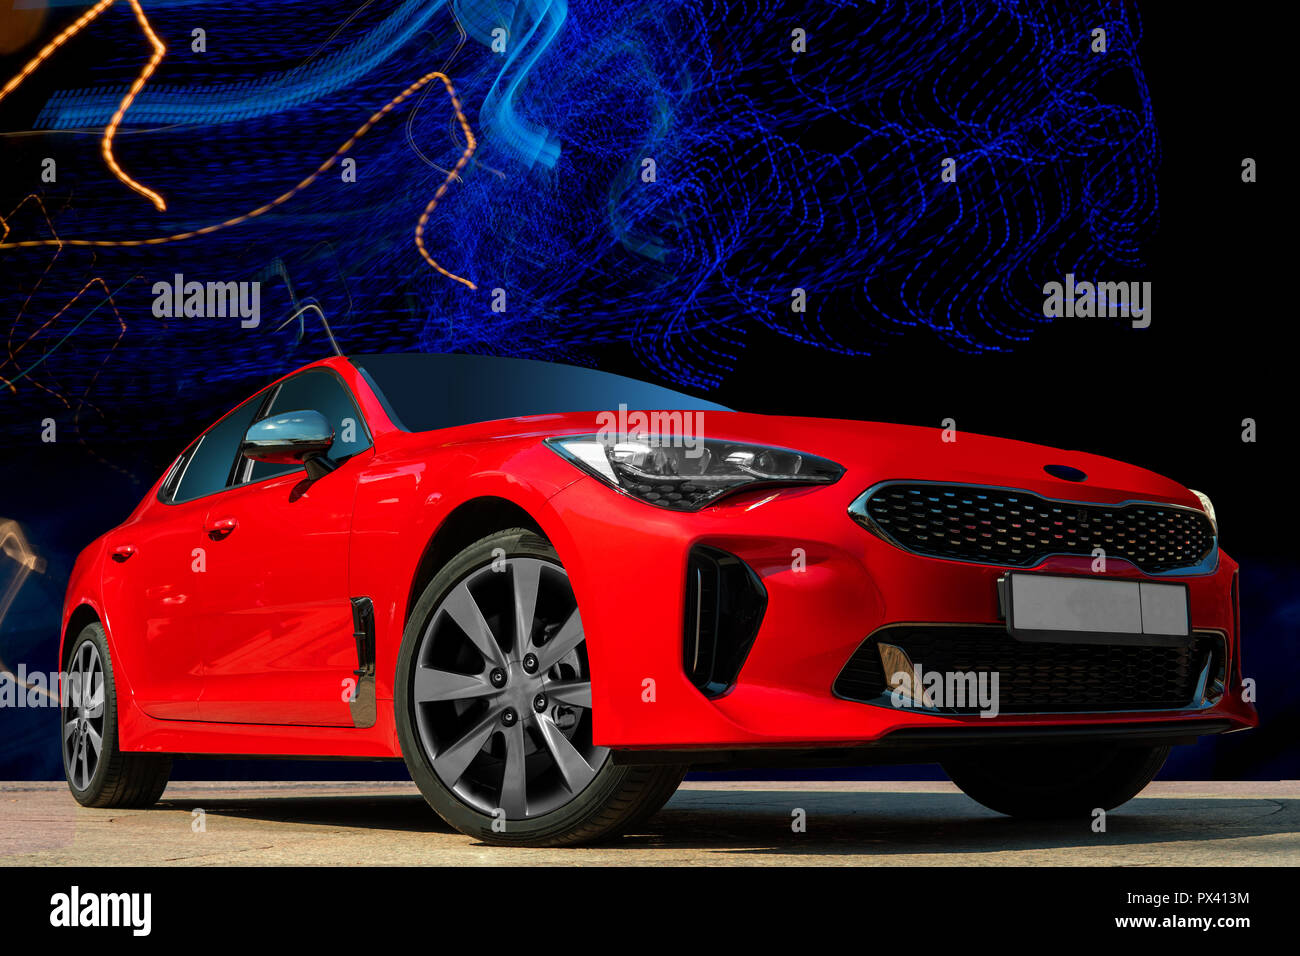 Rotes Auto Auf Einem Schwarzen Hintergrund Stilvolles Modernes Helles Bild Des Autos Fur Design Losungen Stockfotografie Alamy